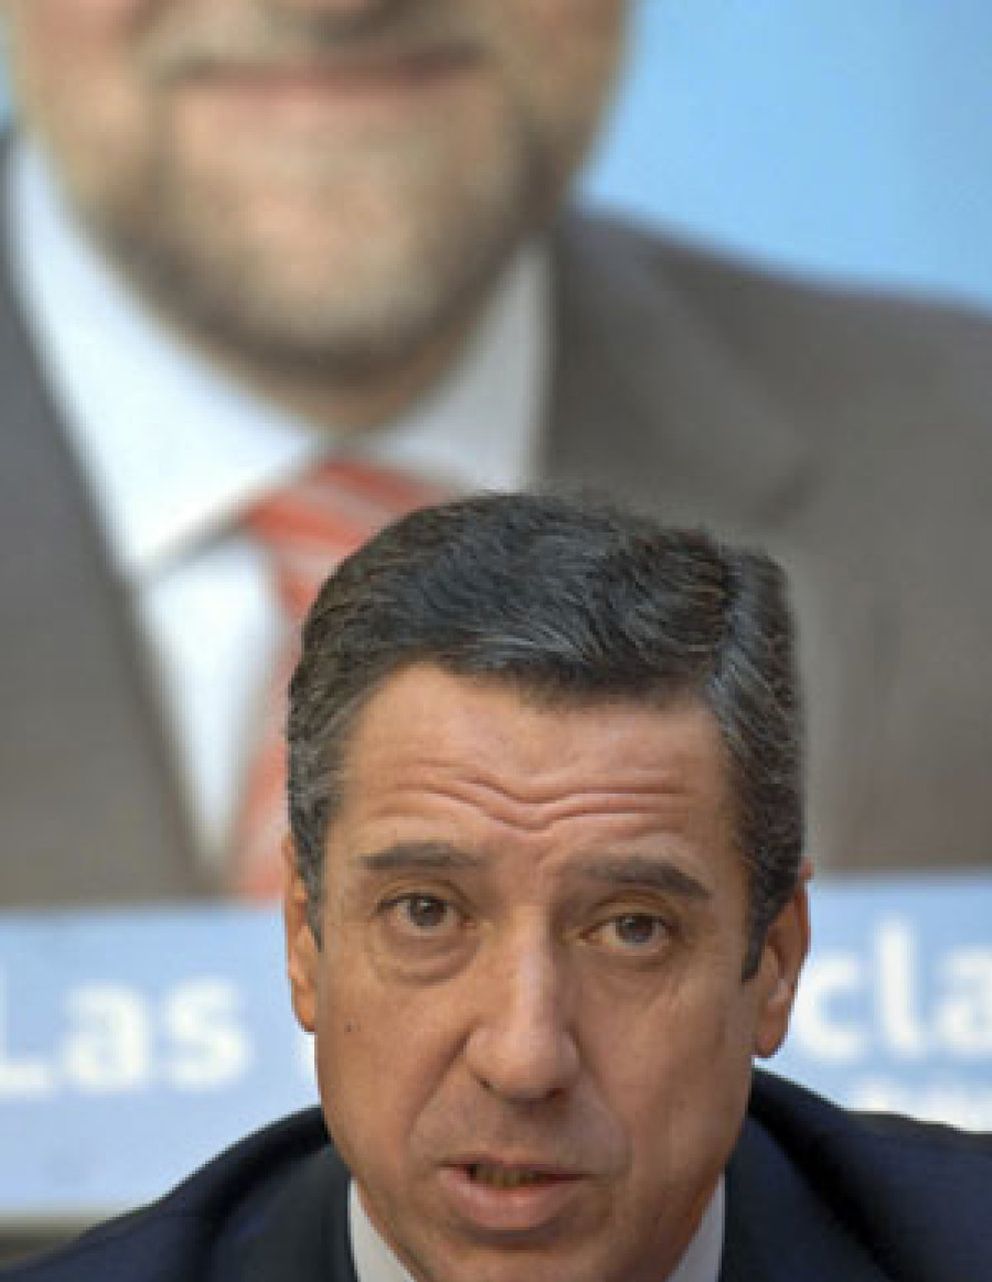 Foto: Zaplana comunicó esta mañana a Rajoy que había decidido dejar la política